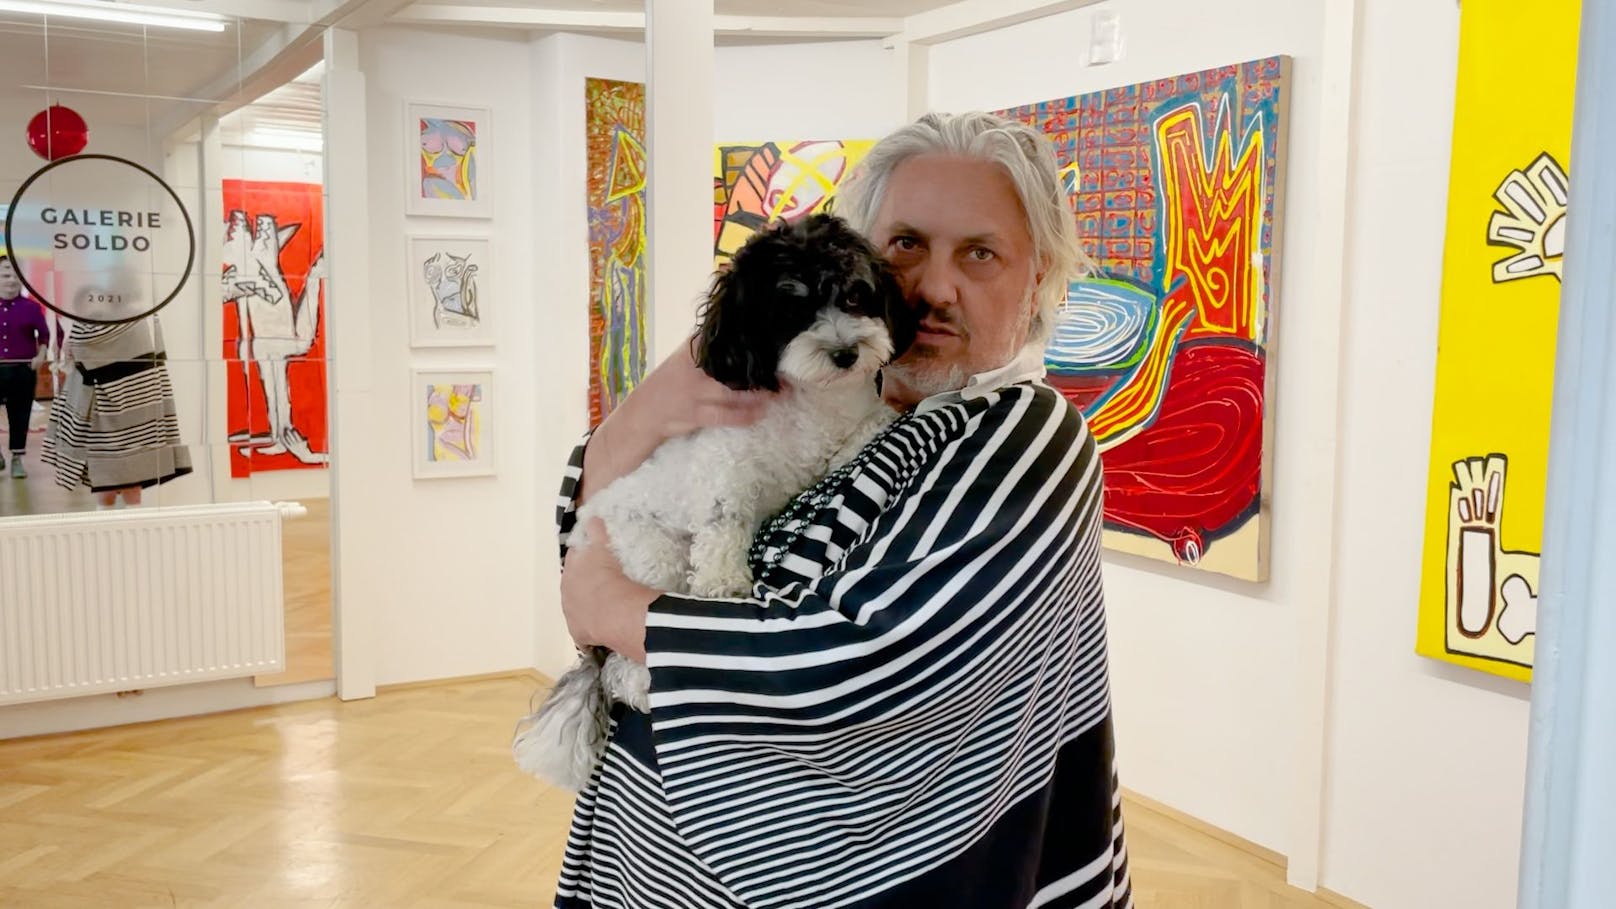 Szenefigur Mario Soldo denkt "Kunstgalerie" neu.